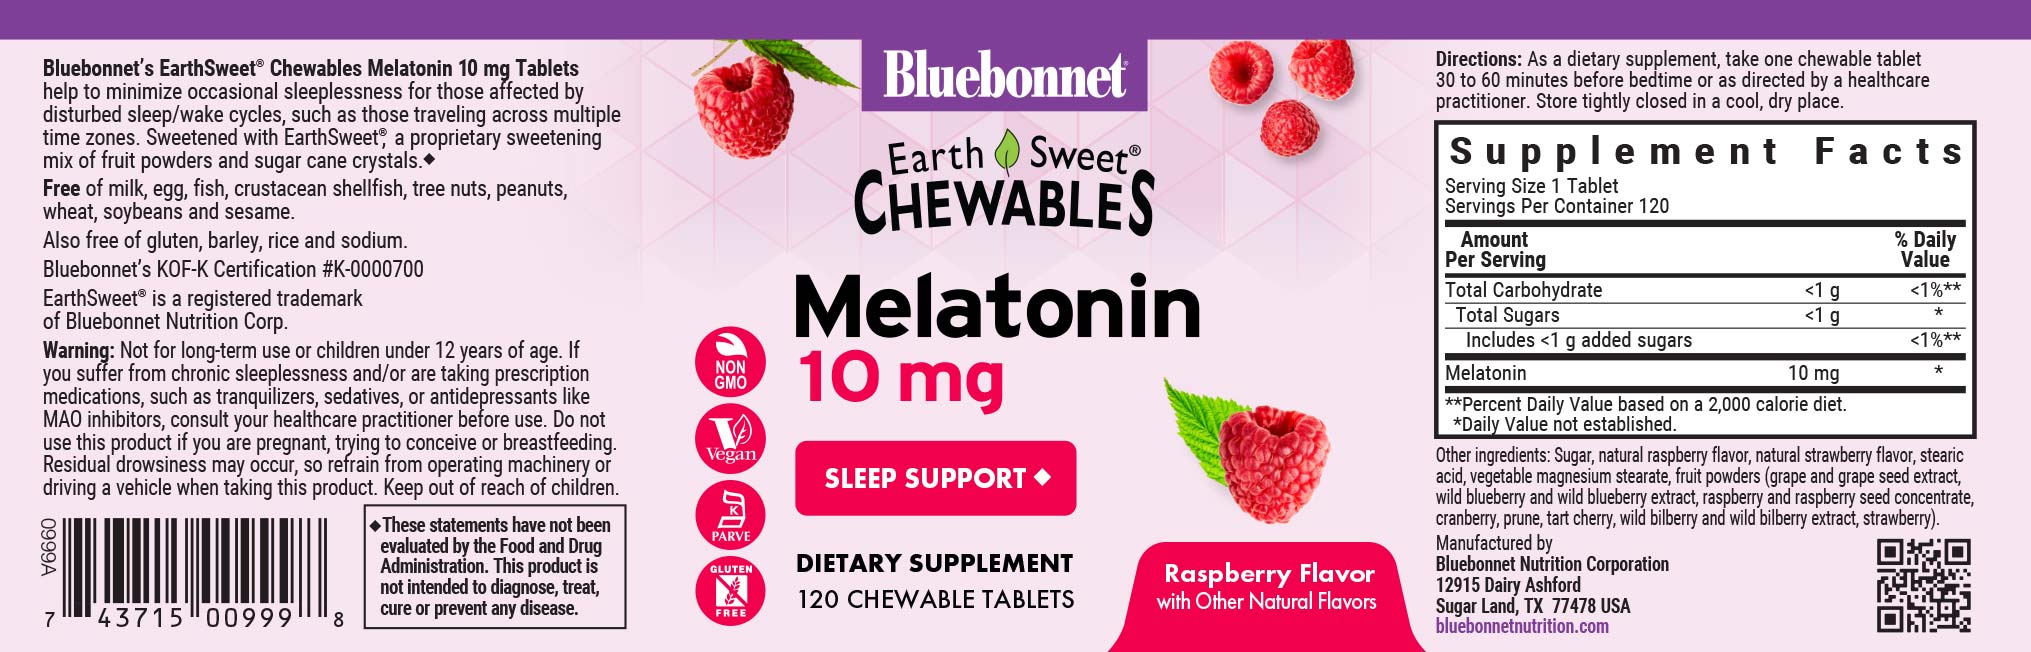 Bluebonnet's Earthsweet chewable melatonin 10 mg. 120 chewable tablets